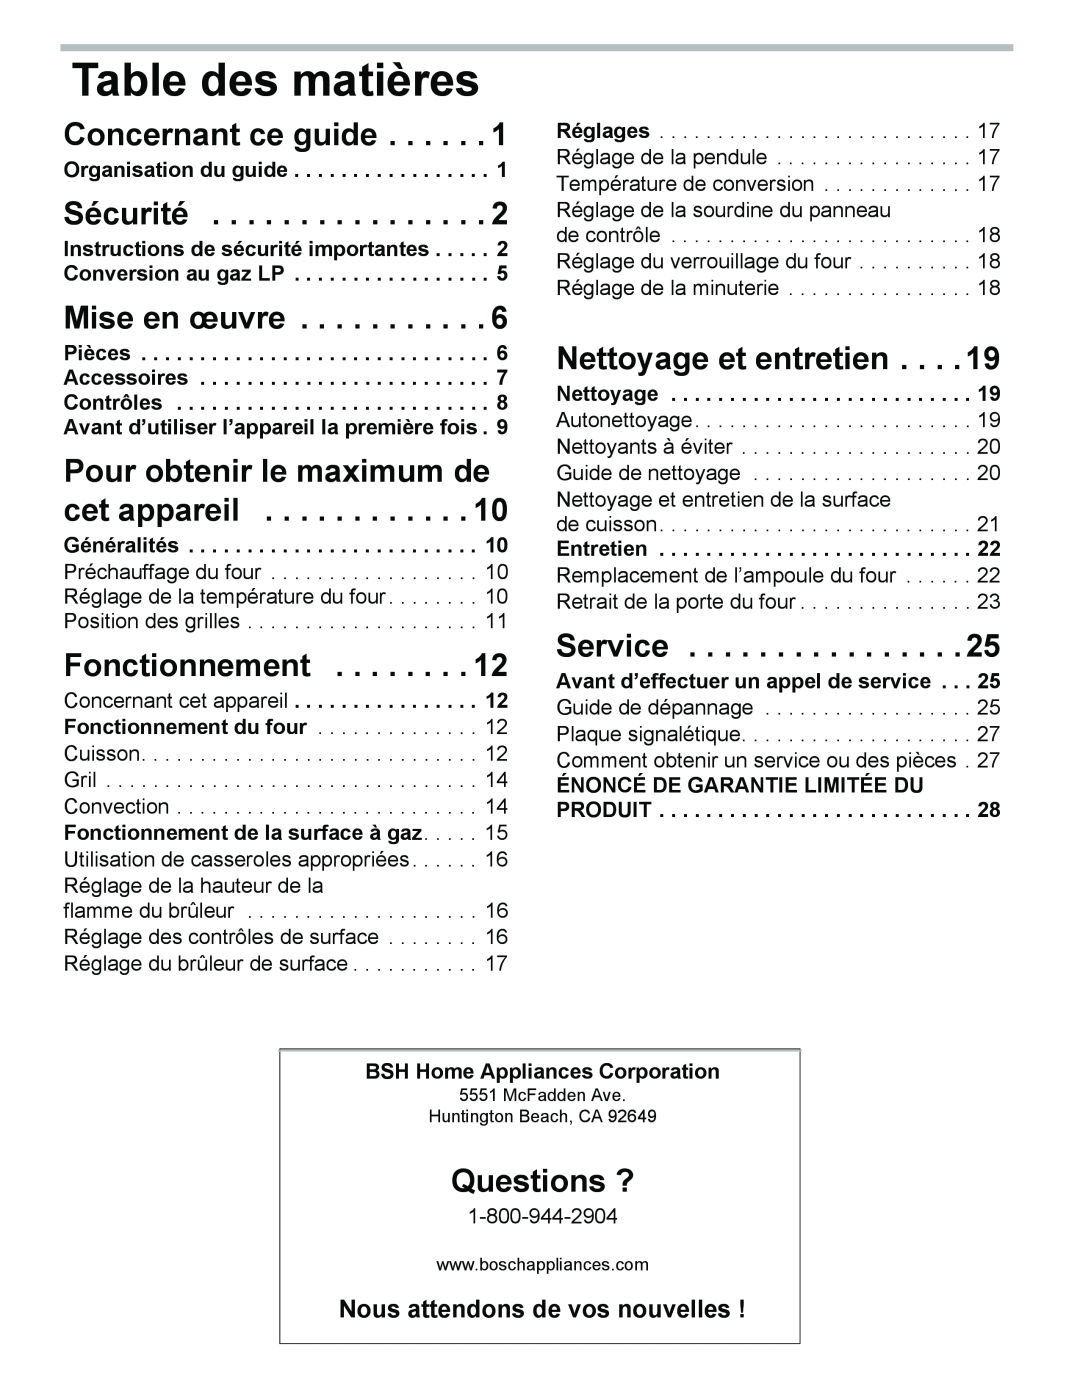 Bosch Appliances HGS3023UC Table des matières, Concernant ce guide, Sécurité, Mise en œuvre, Fonctionnement, Questions ? 